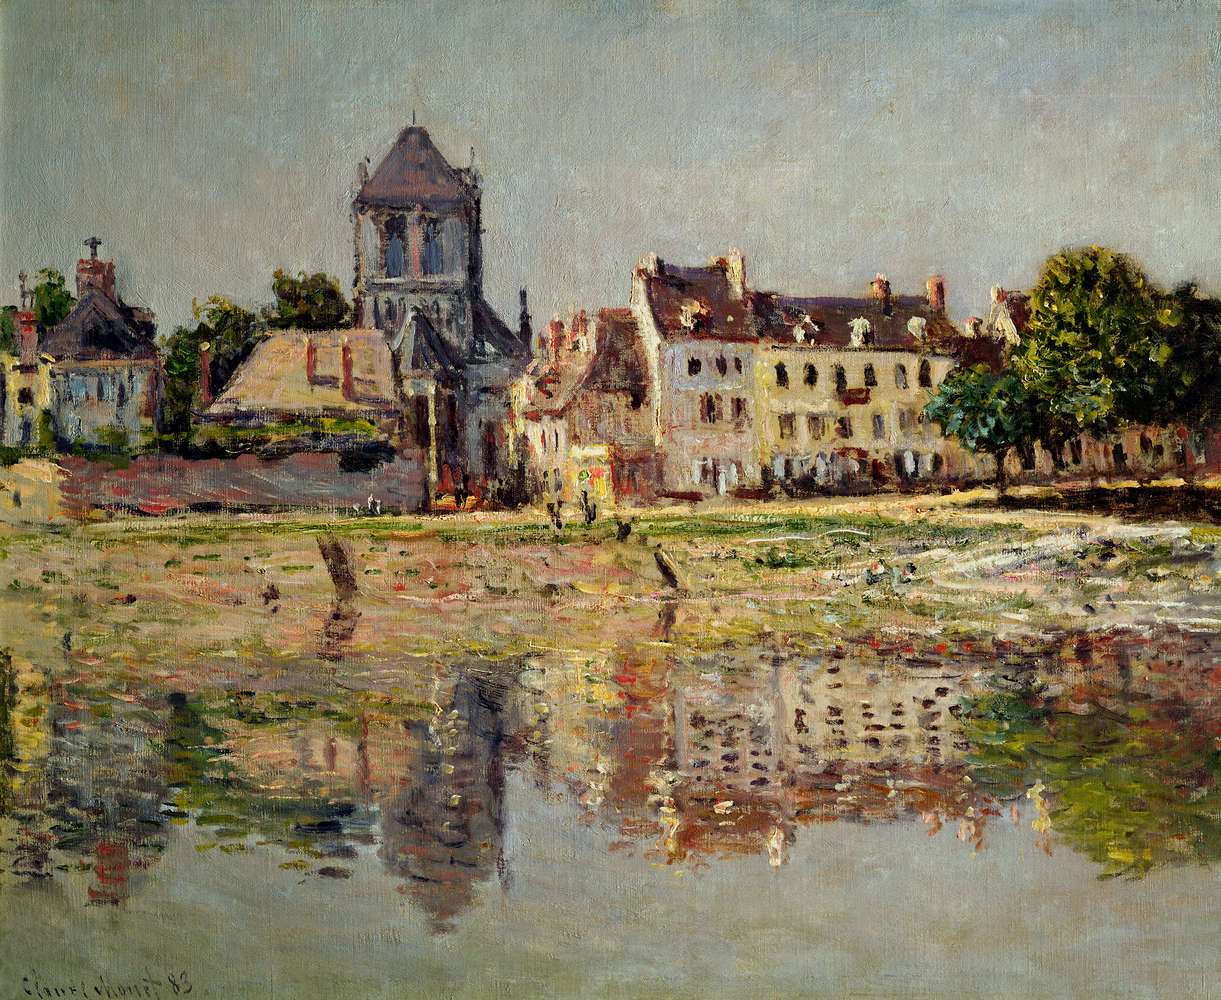             Fototapete "Am Fluss bei Vernon" von Claude Monet
        